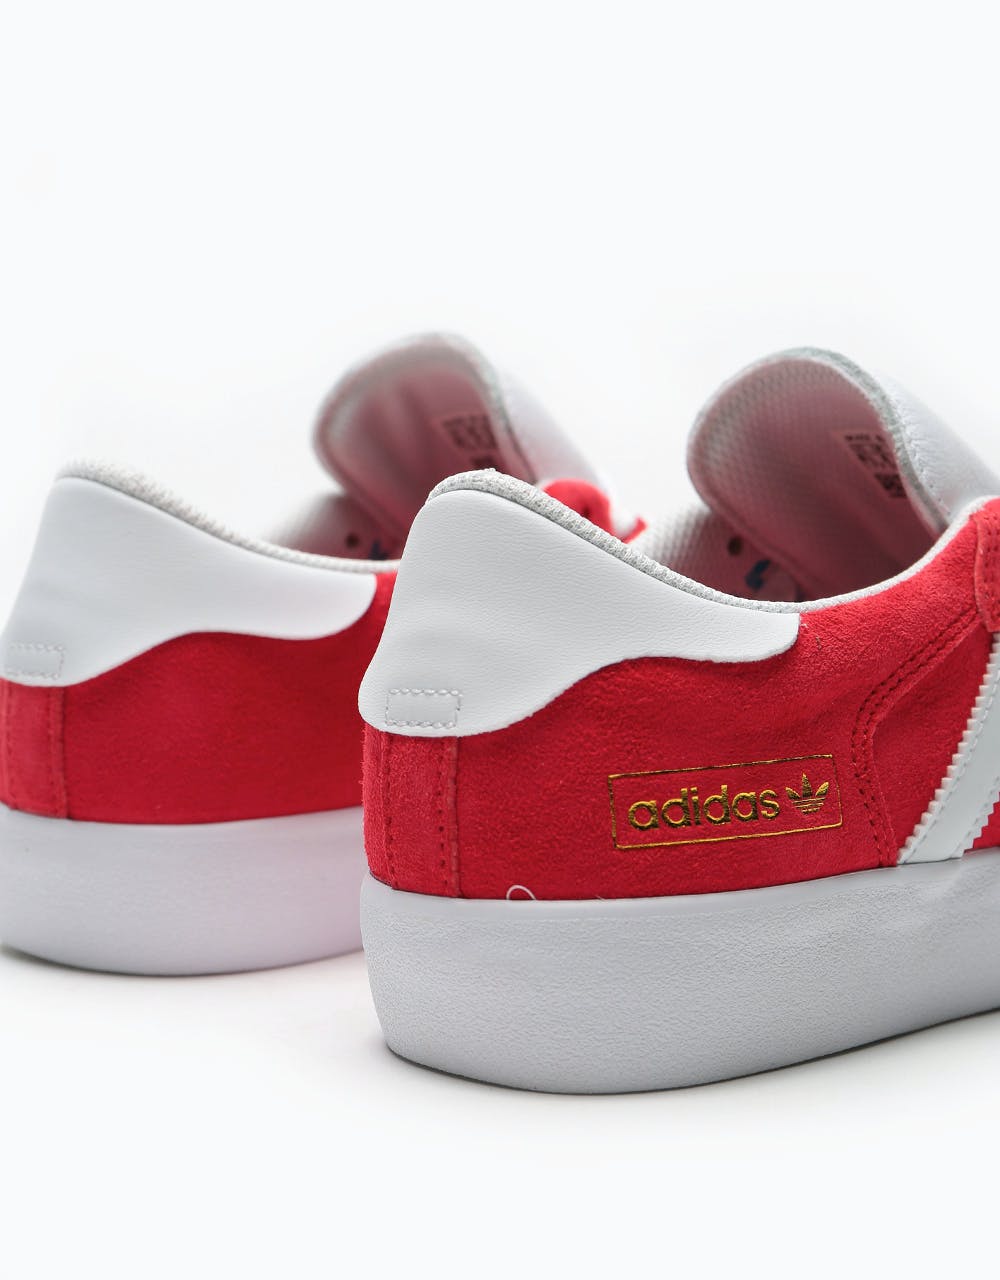 Adidas Matchbreak Super Skate Shoes - Scarlet/White/Gold Metallic